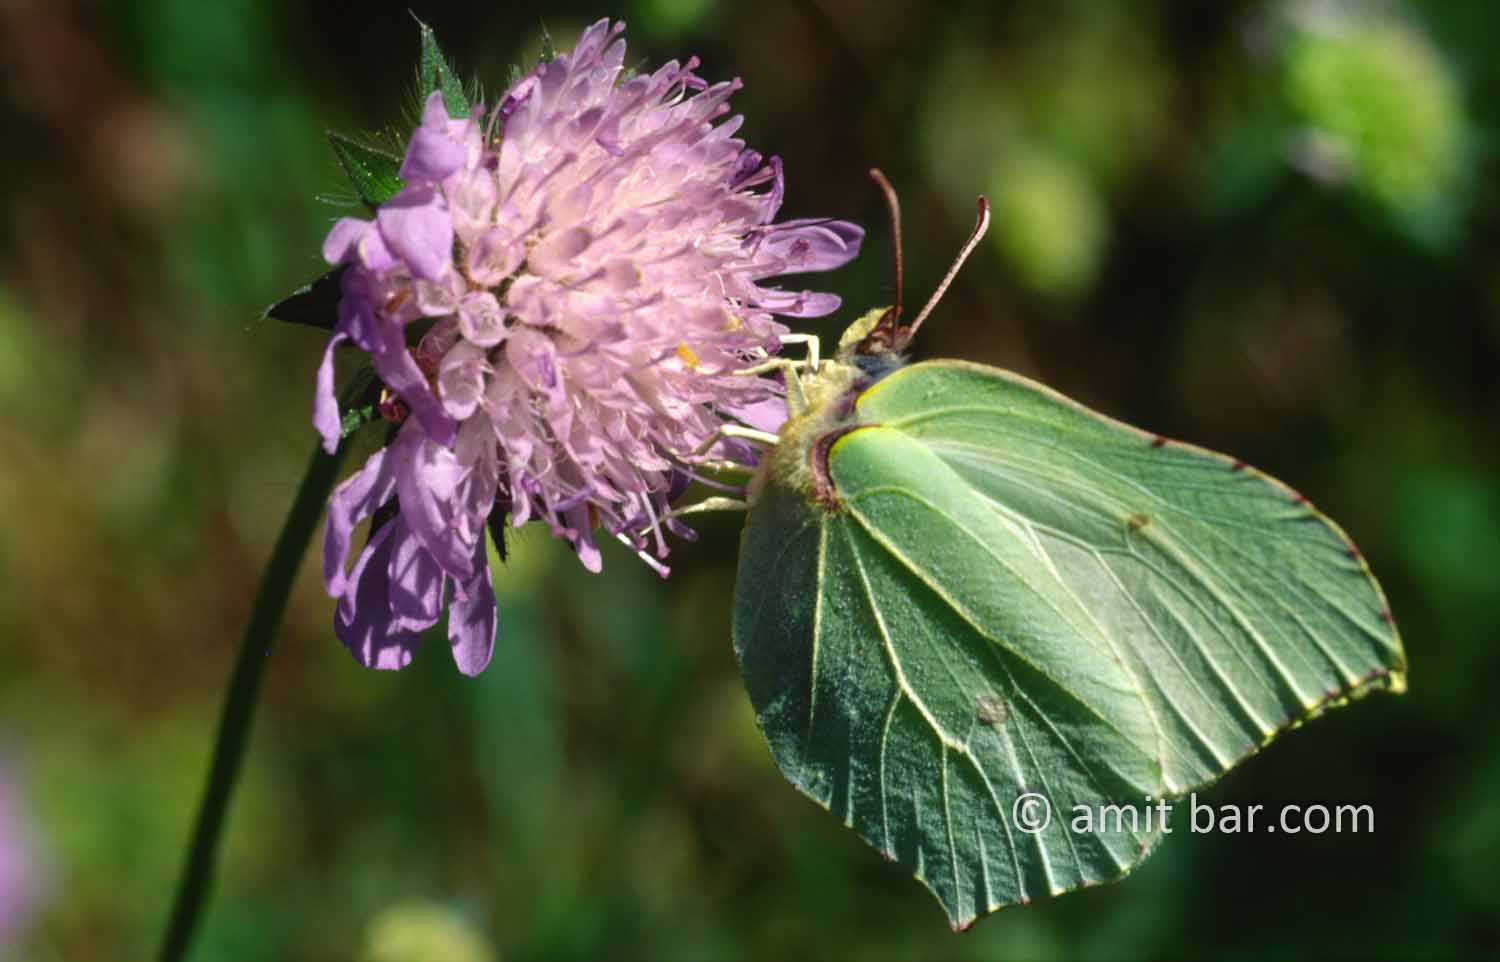 Green butterfly: Green butterfly on flower